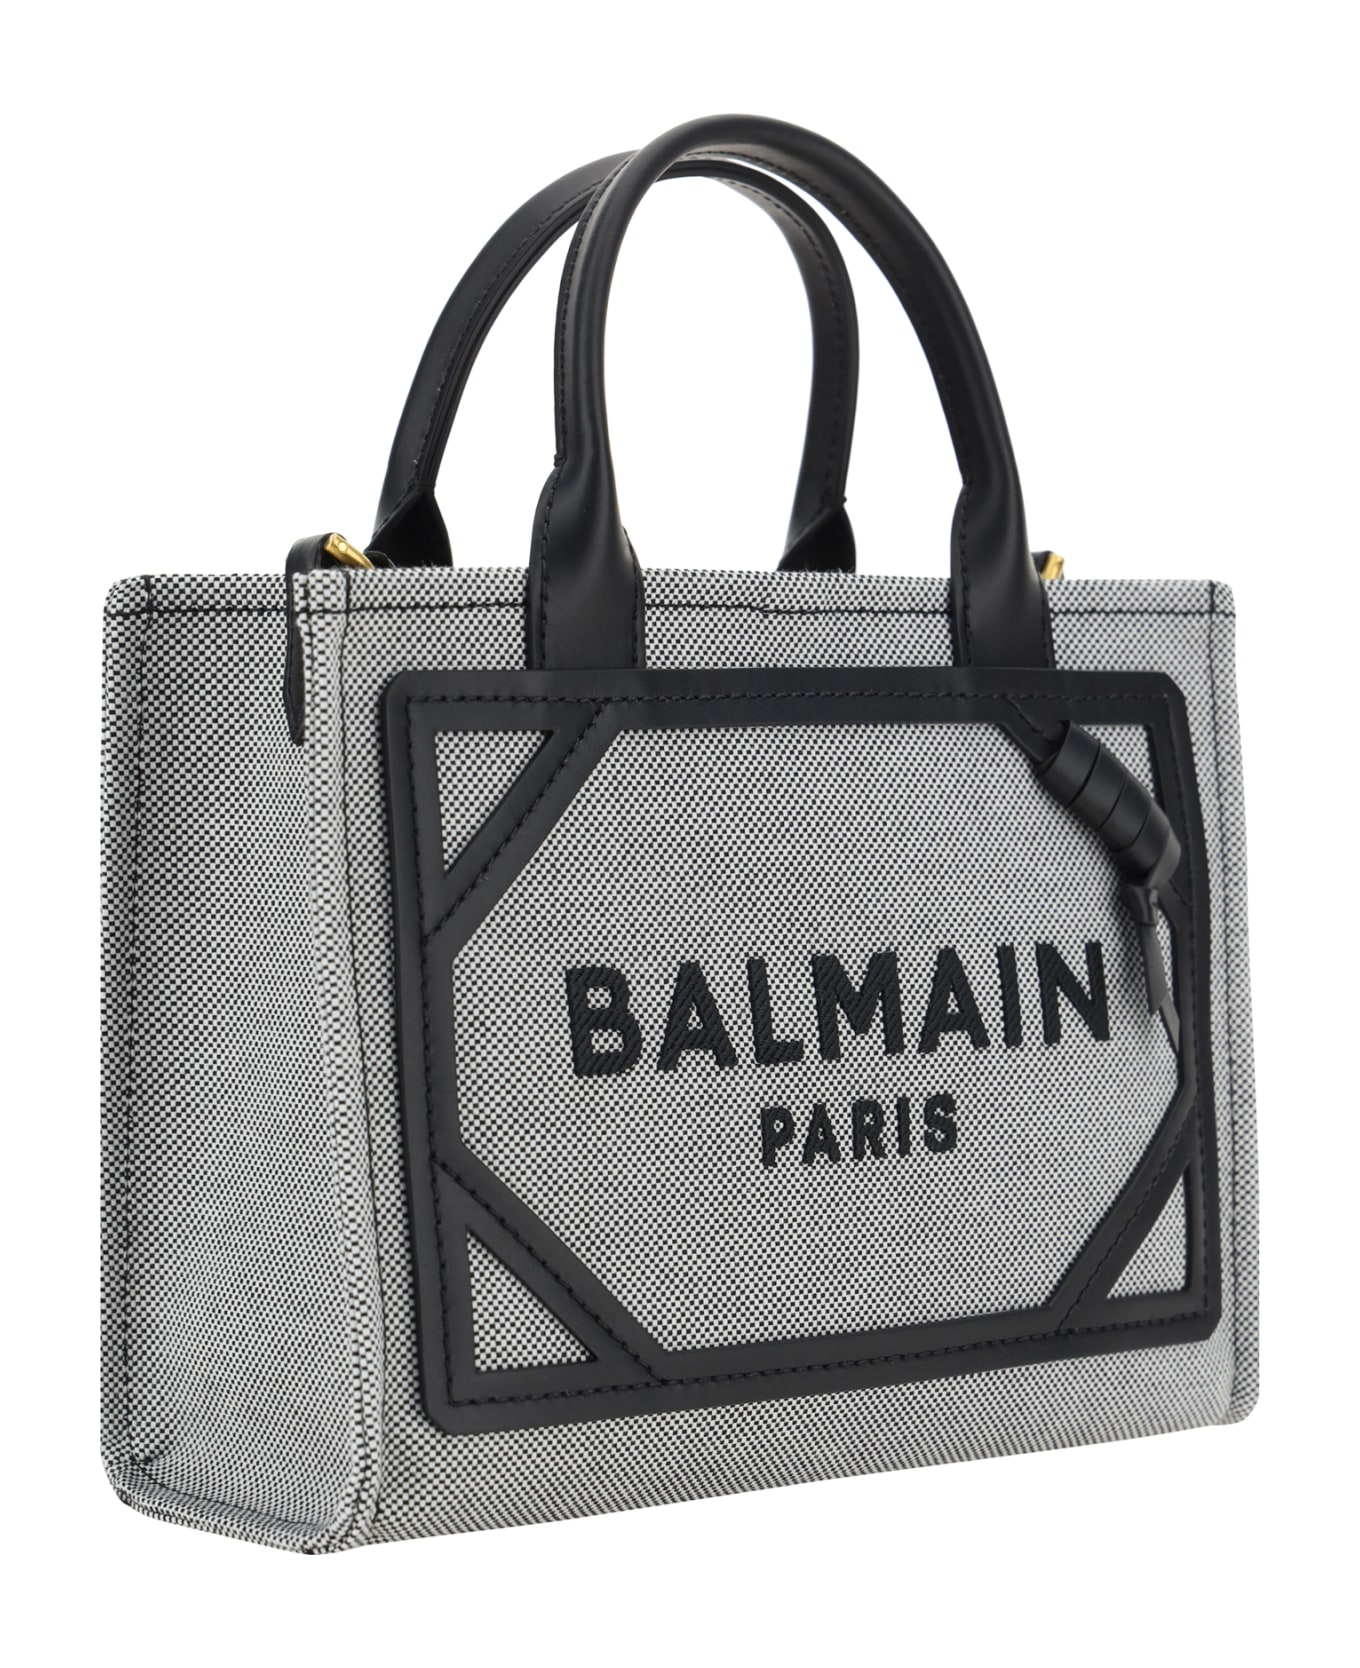 Balmain B-army Handbag - Eab Noir/blanc トートバッグ